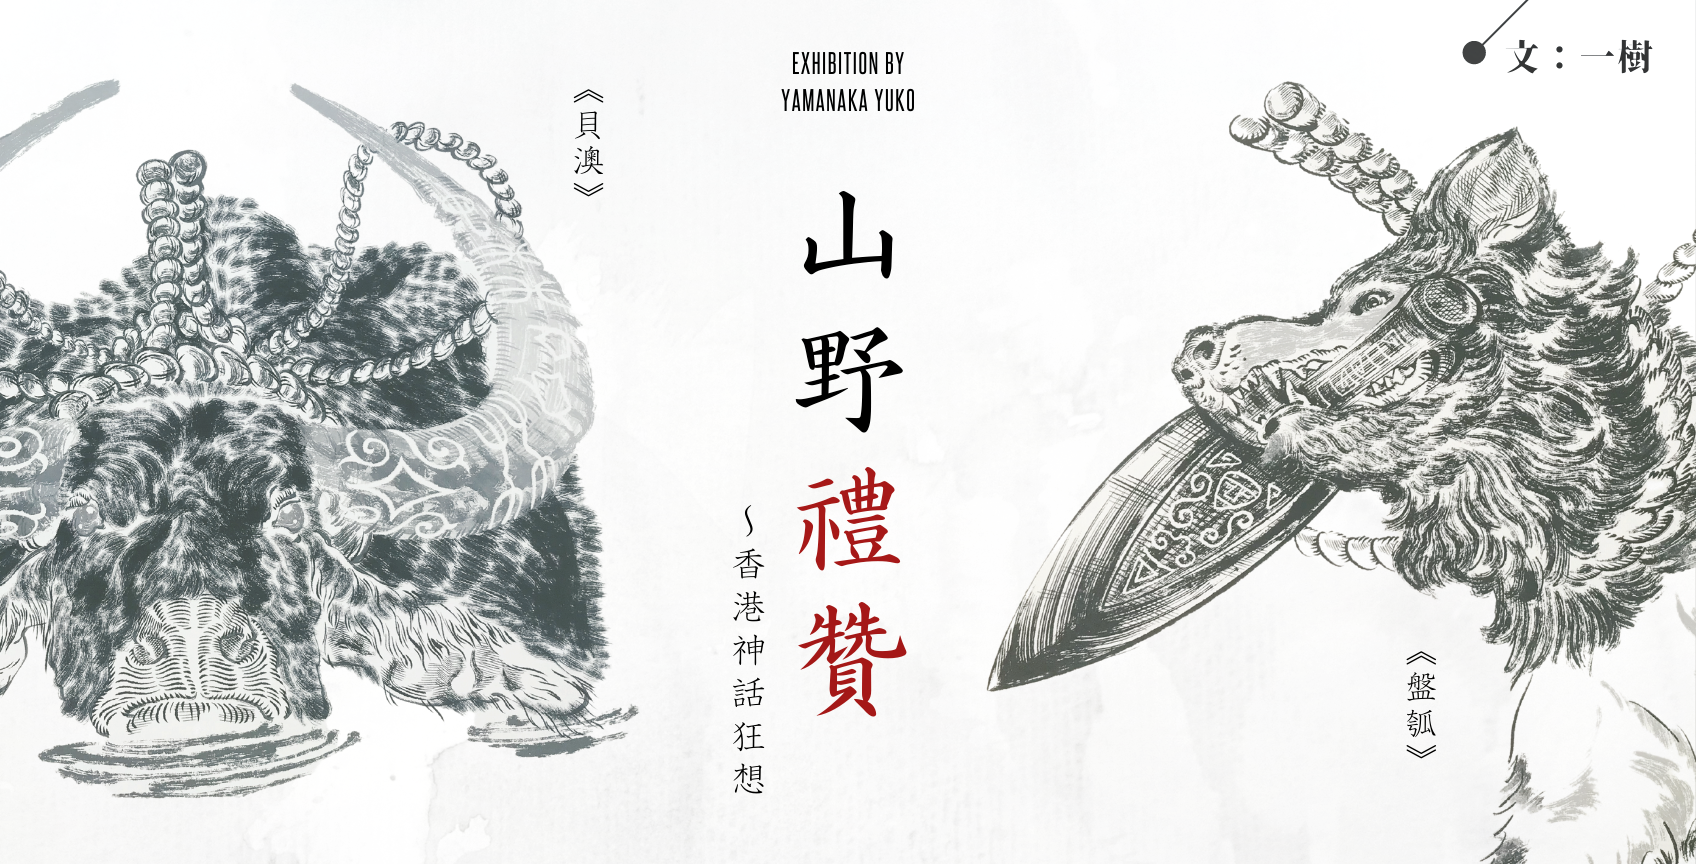 【藝術展覽】《山野禮贊》：「山中遊子」的香港神話狂想